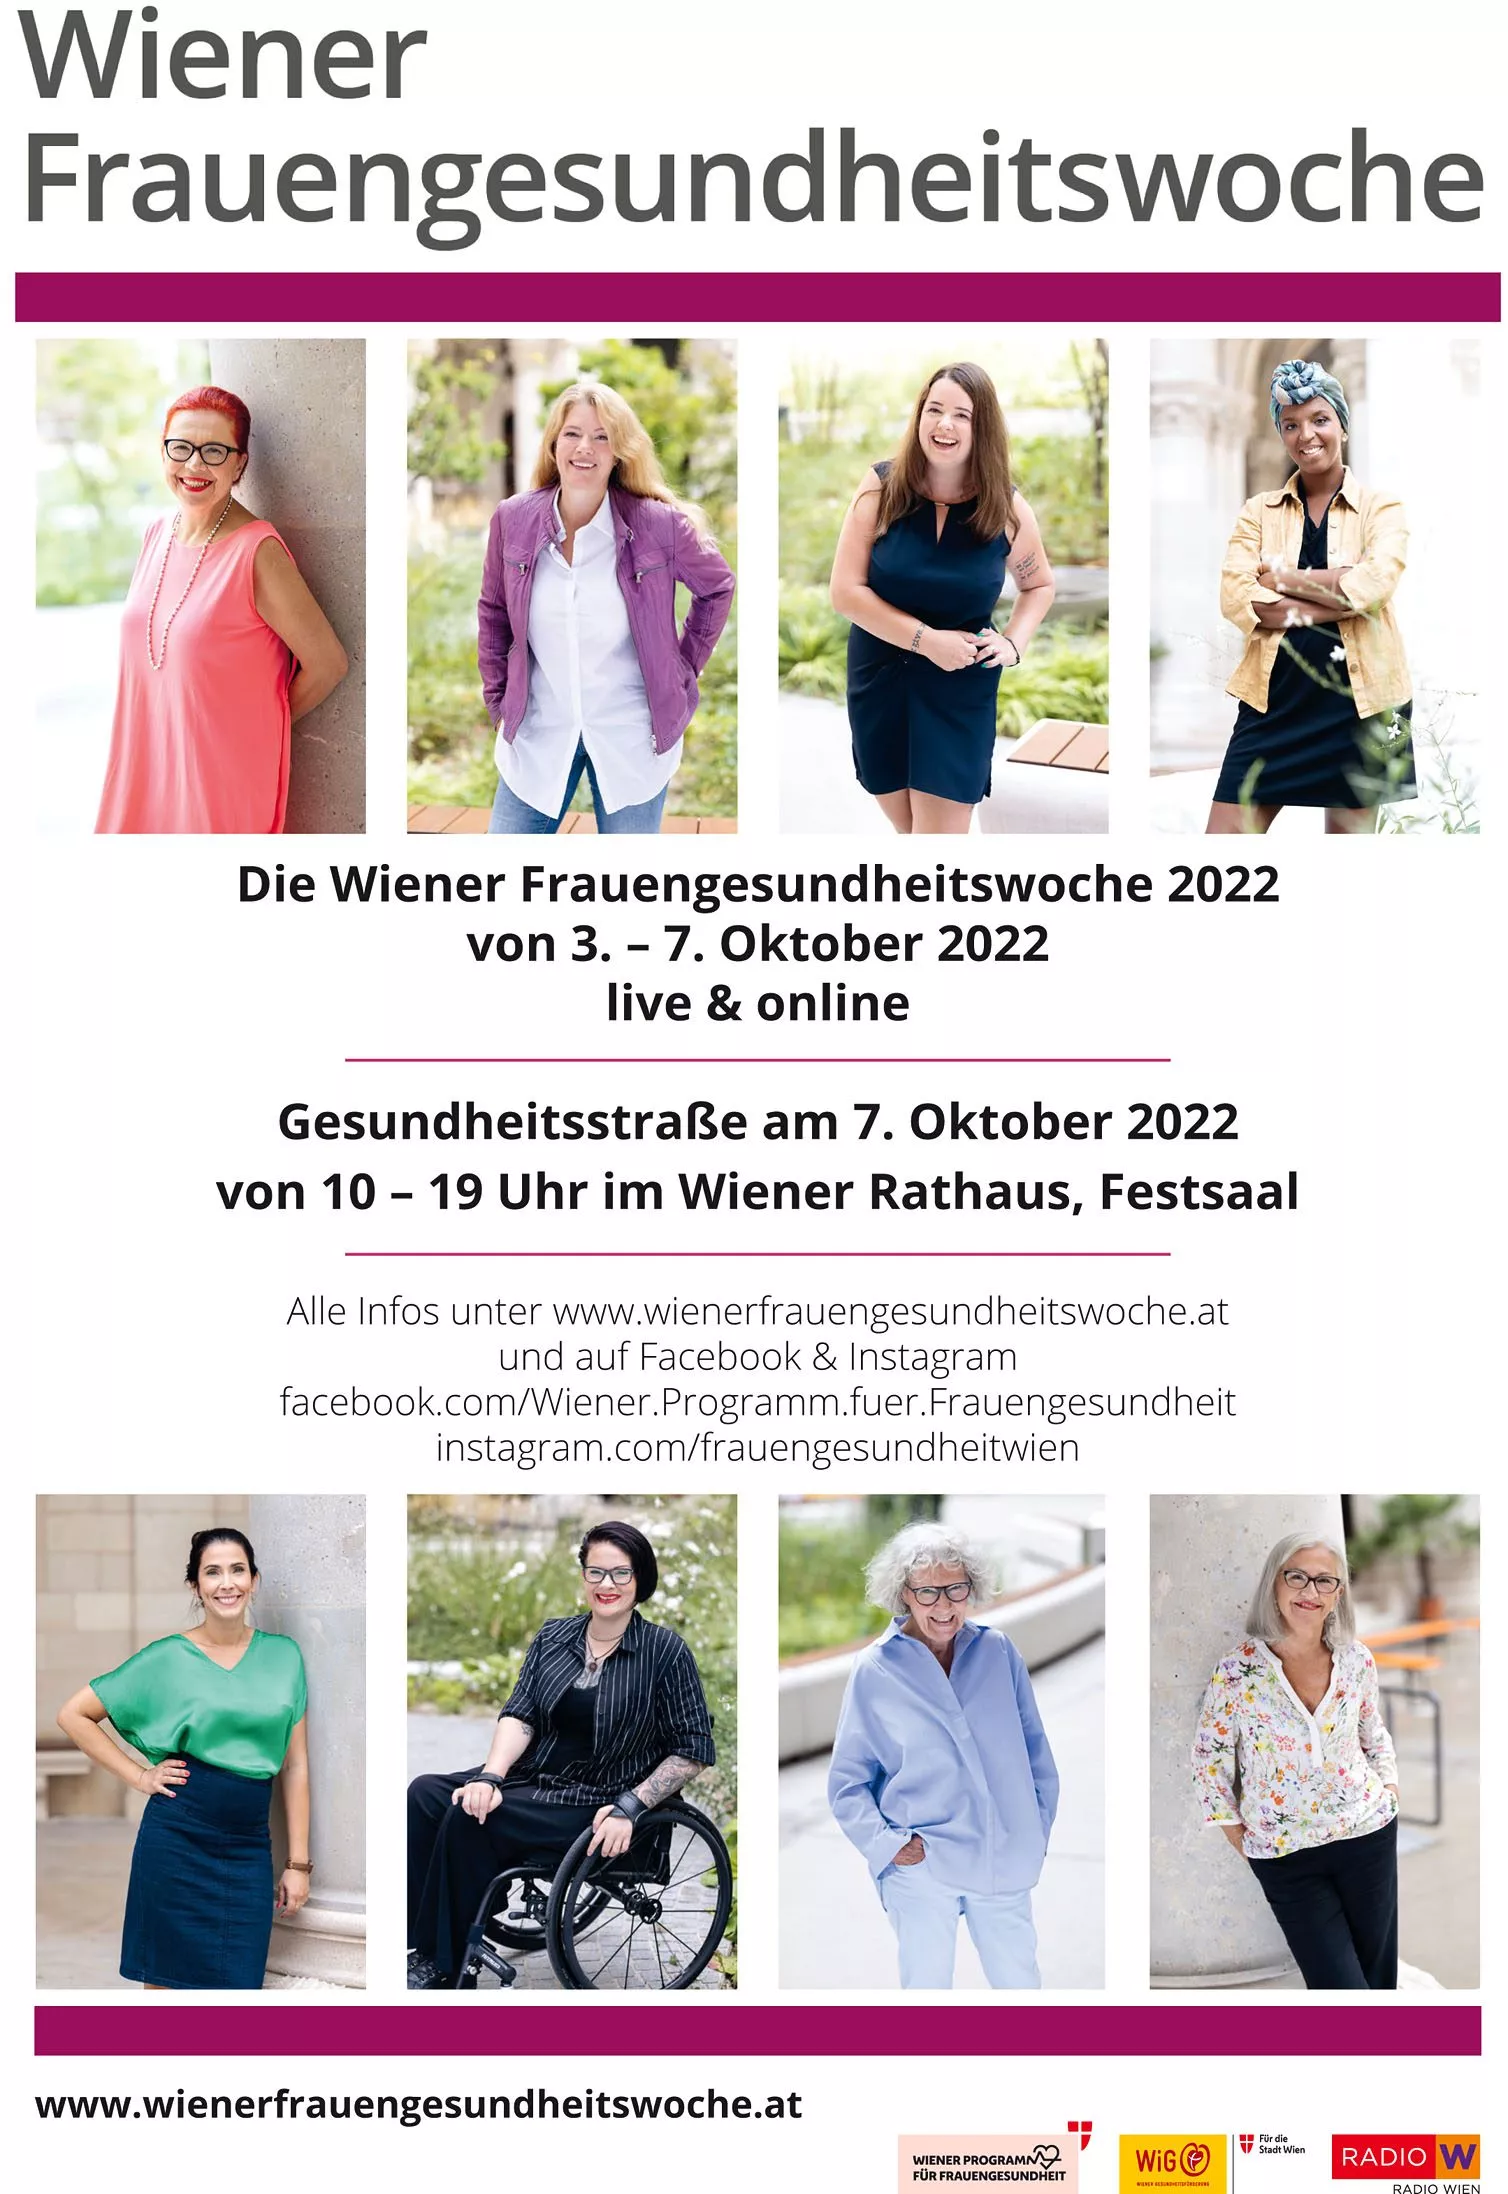 Wiener Frauengesundheitswoche von 3. bis 7. Oktober 2022